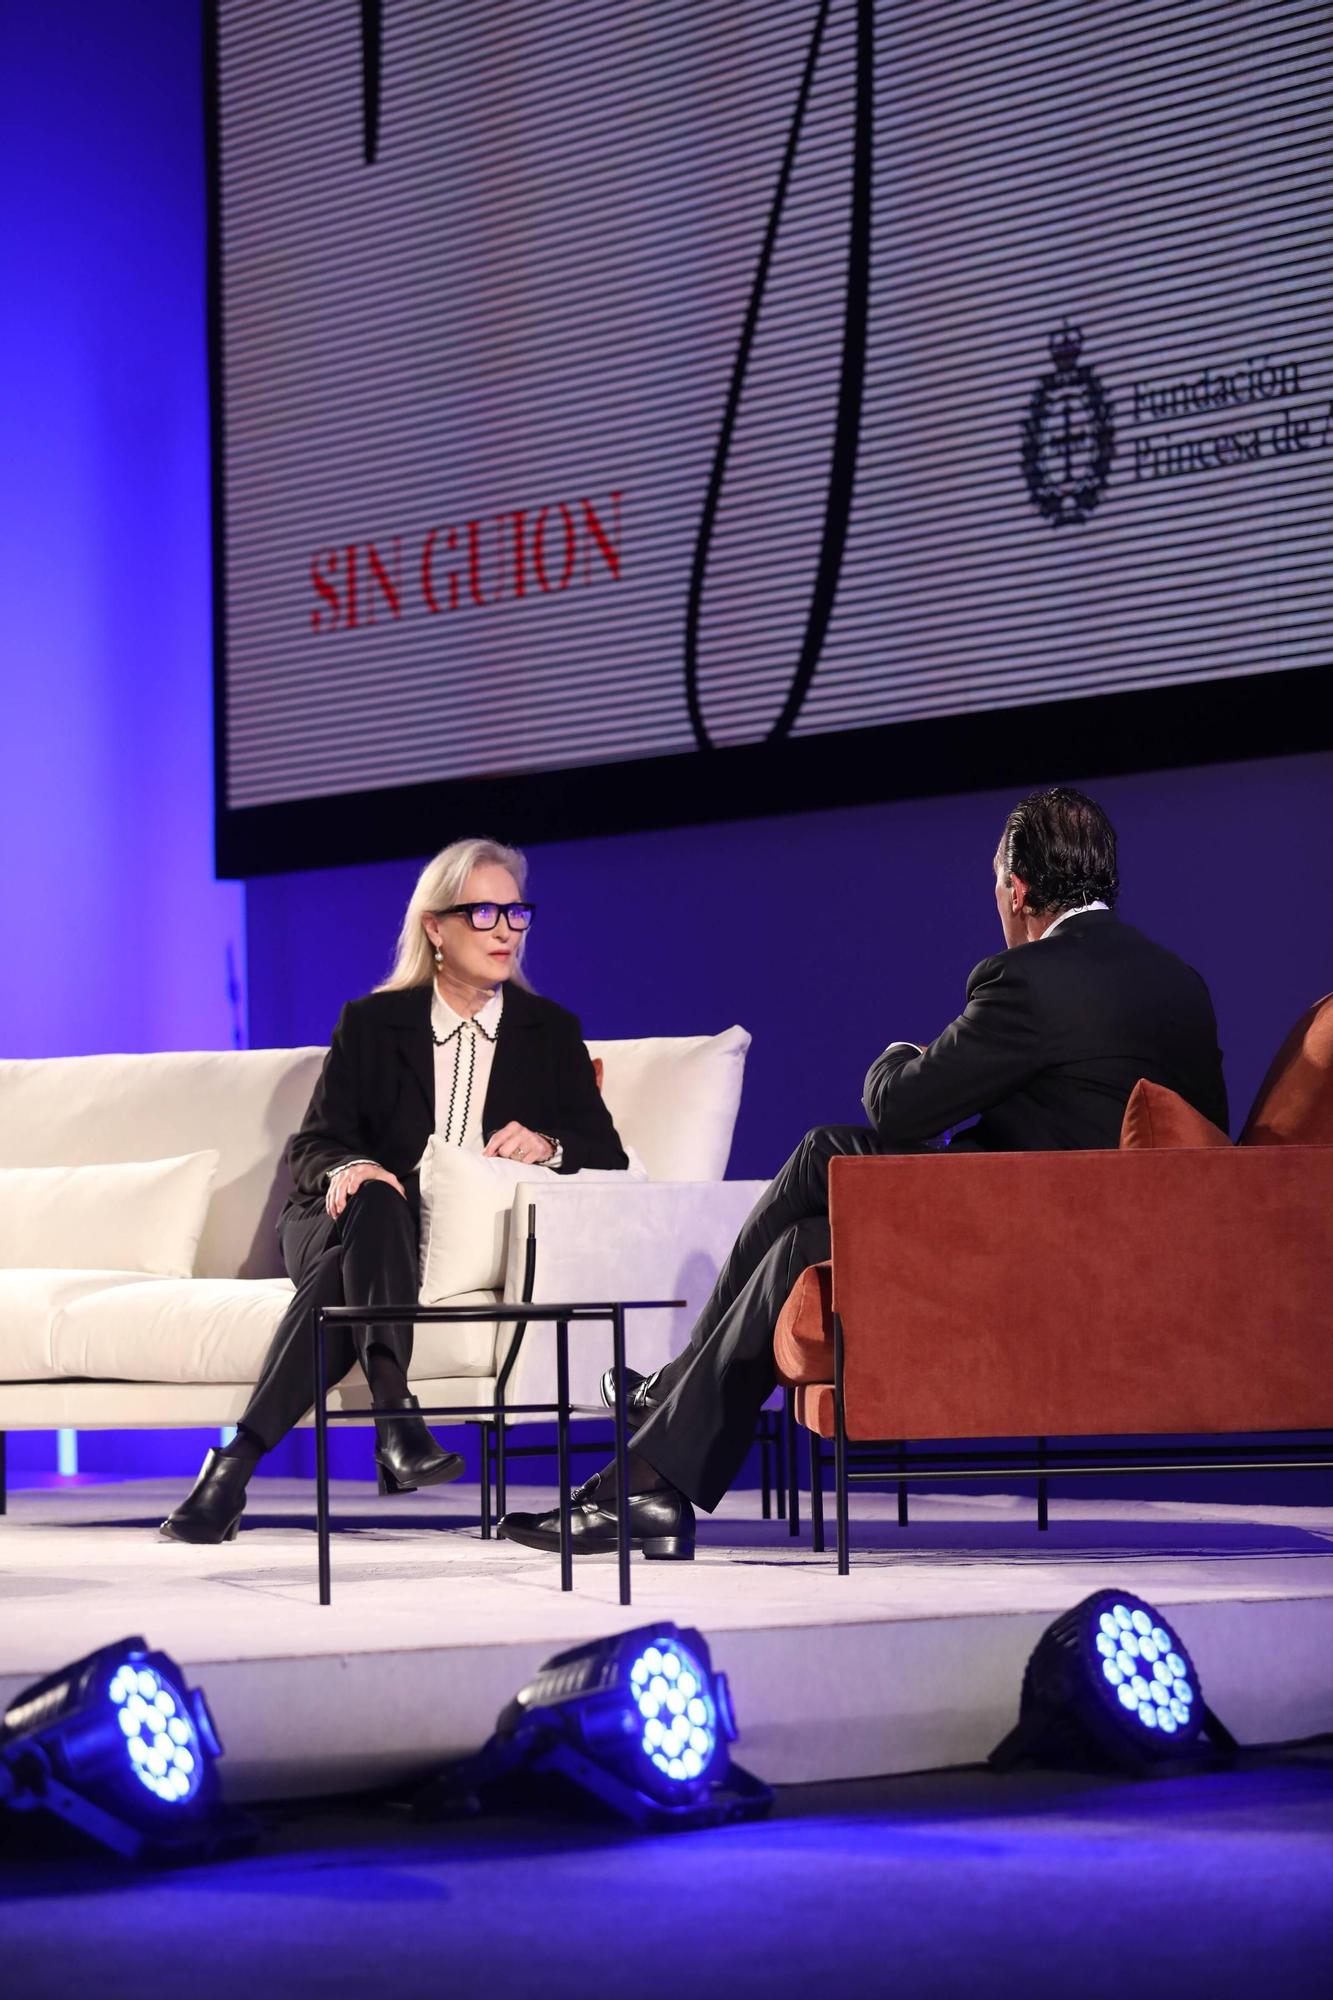 Encuentro entre Meryl Streep y Antonio Banderas en el Palacio de Congresos de Oviedo